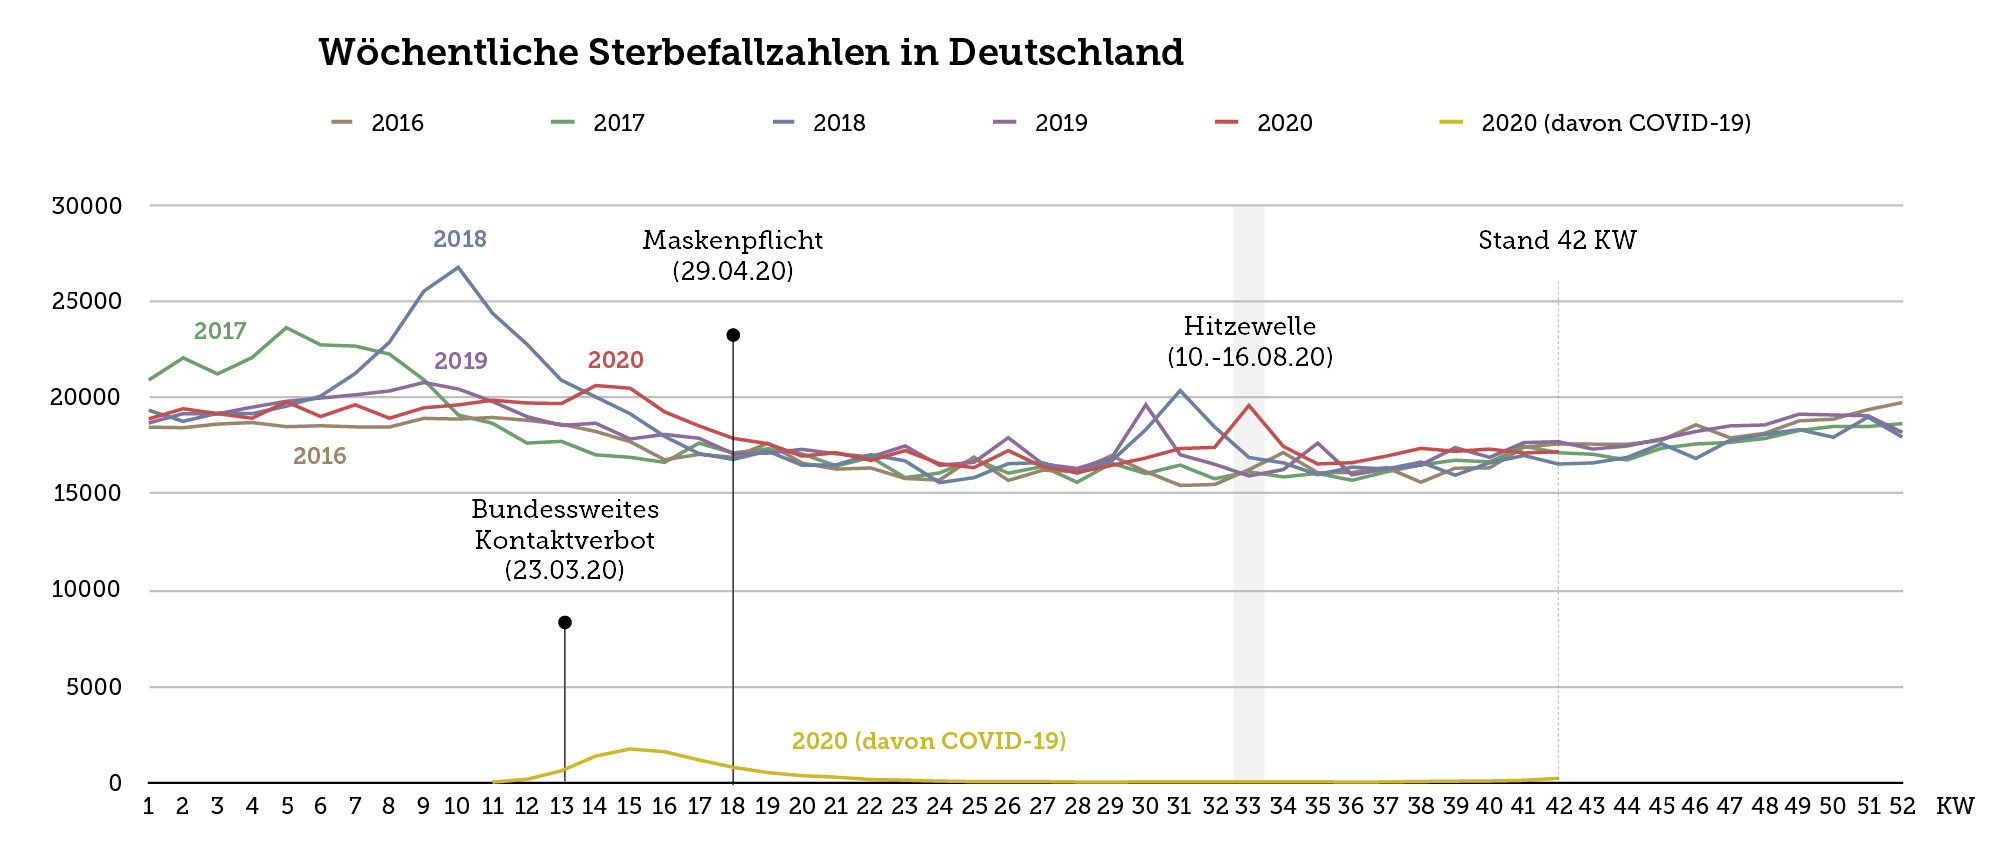 Die Grafik zeigt die wöchentlichen Sterbefallzahlen in Deutschland